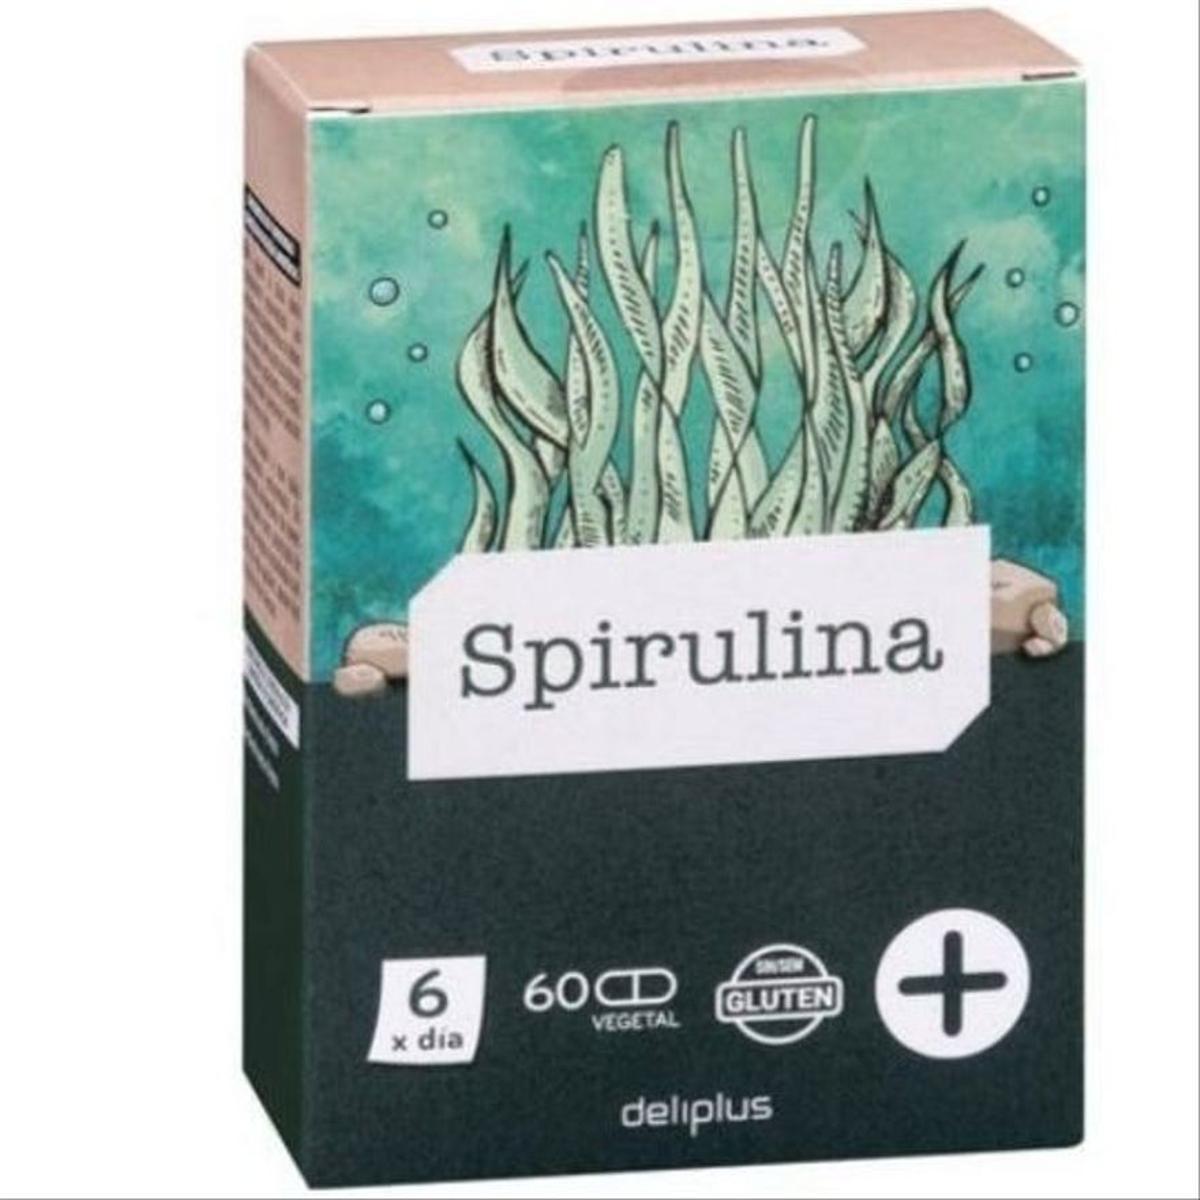 La espirulina, el 'súper alimento' éxito de ventas de Mercadona